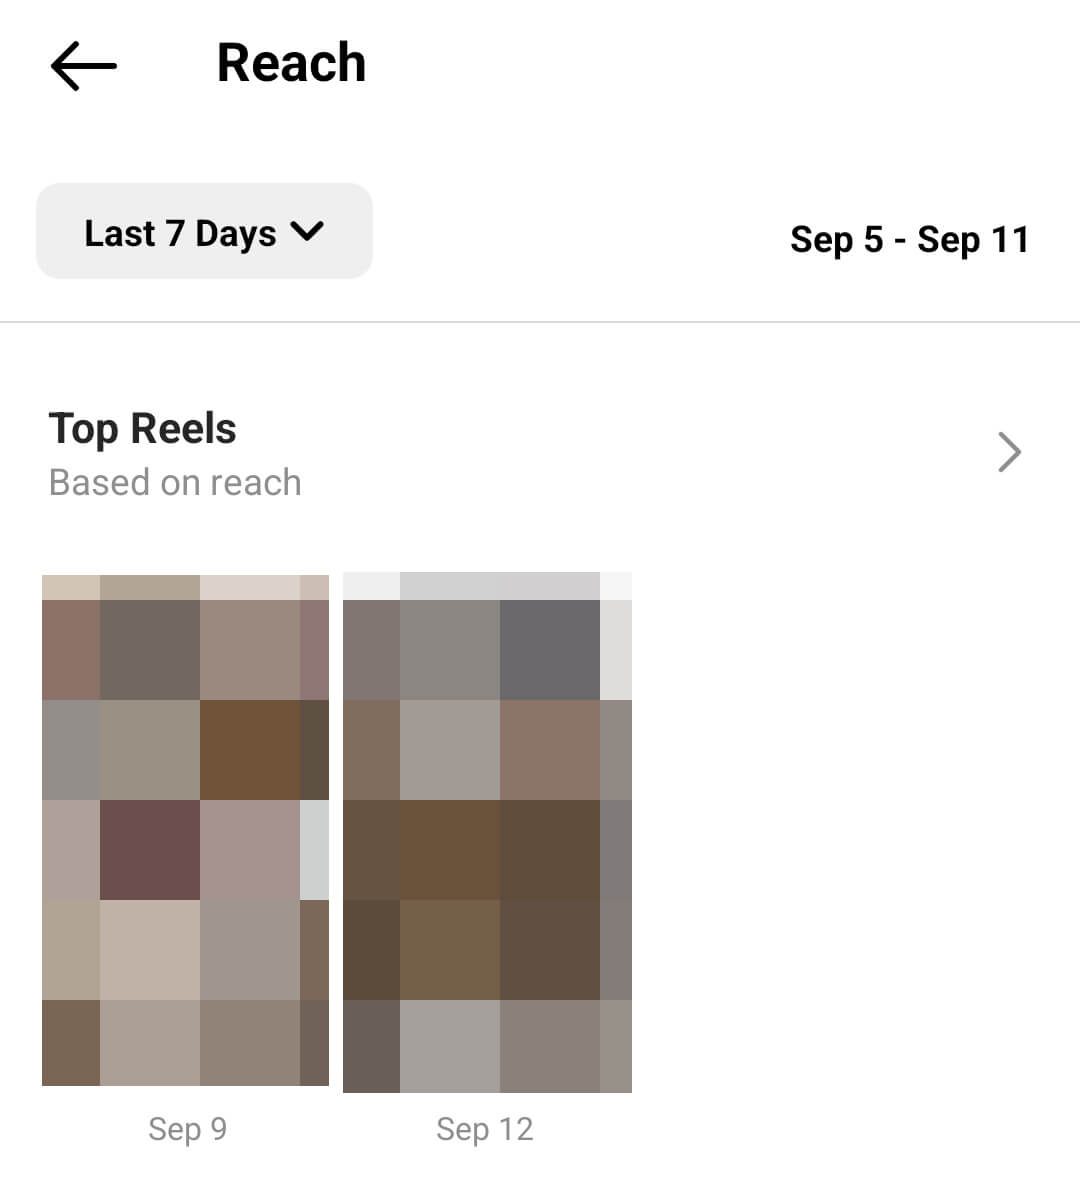 how-to-analyze-instagram-reels-reach-top-reels-example-8